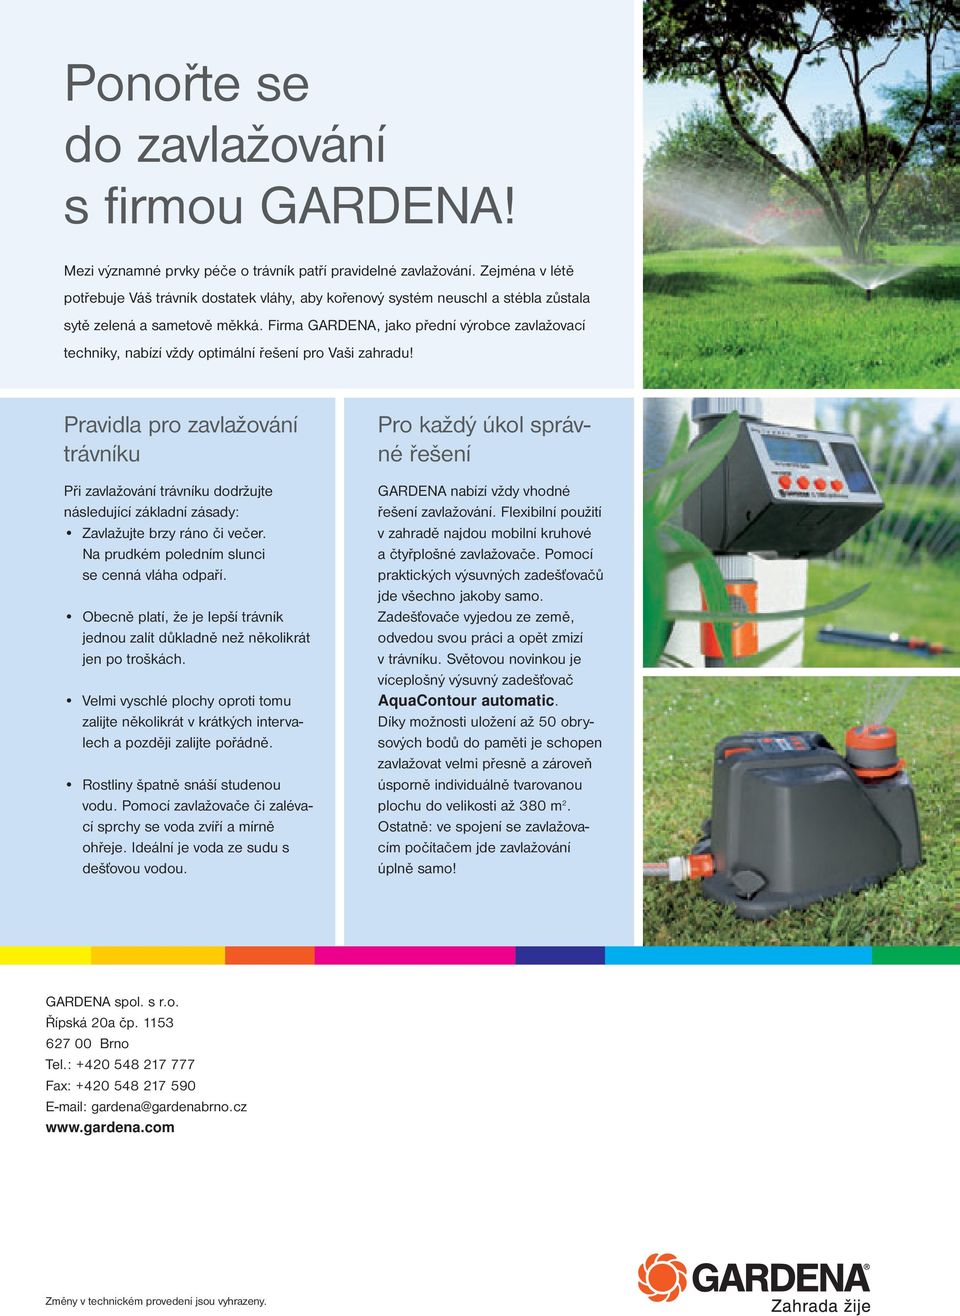 Firma GARDENA, jako přední výrobce zavlažovací techniky, nabízí vždy optimální řešení pro Vaši zahradu!